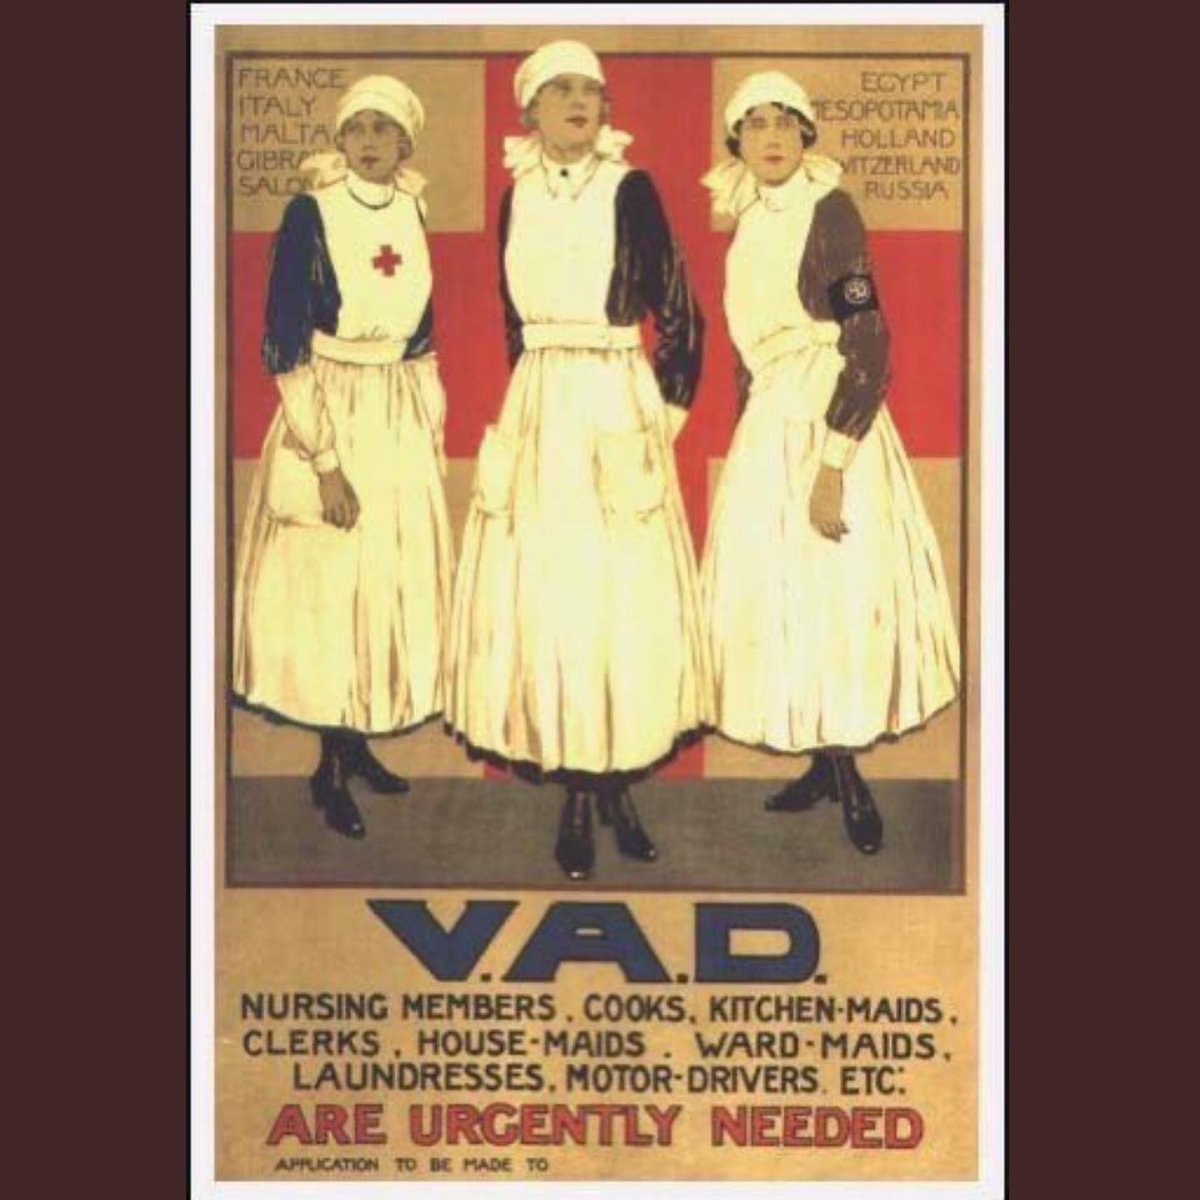 WWI recruitment poster - nurses urgently needed #histmed #historyofmedicine #WWI #pastmedicalhistory